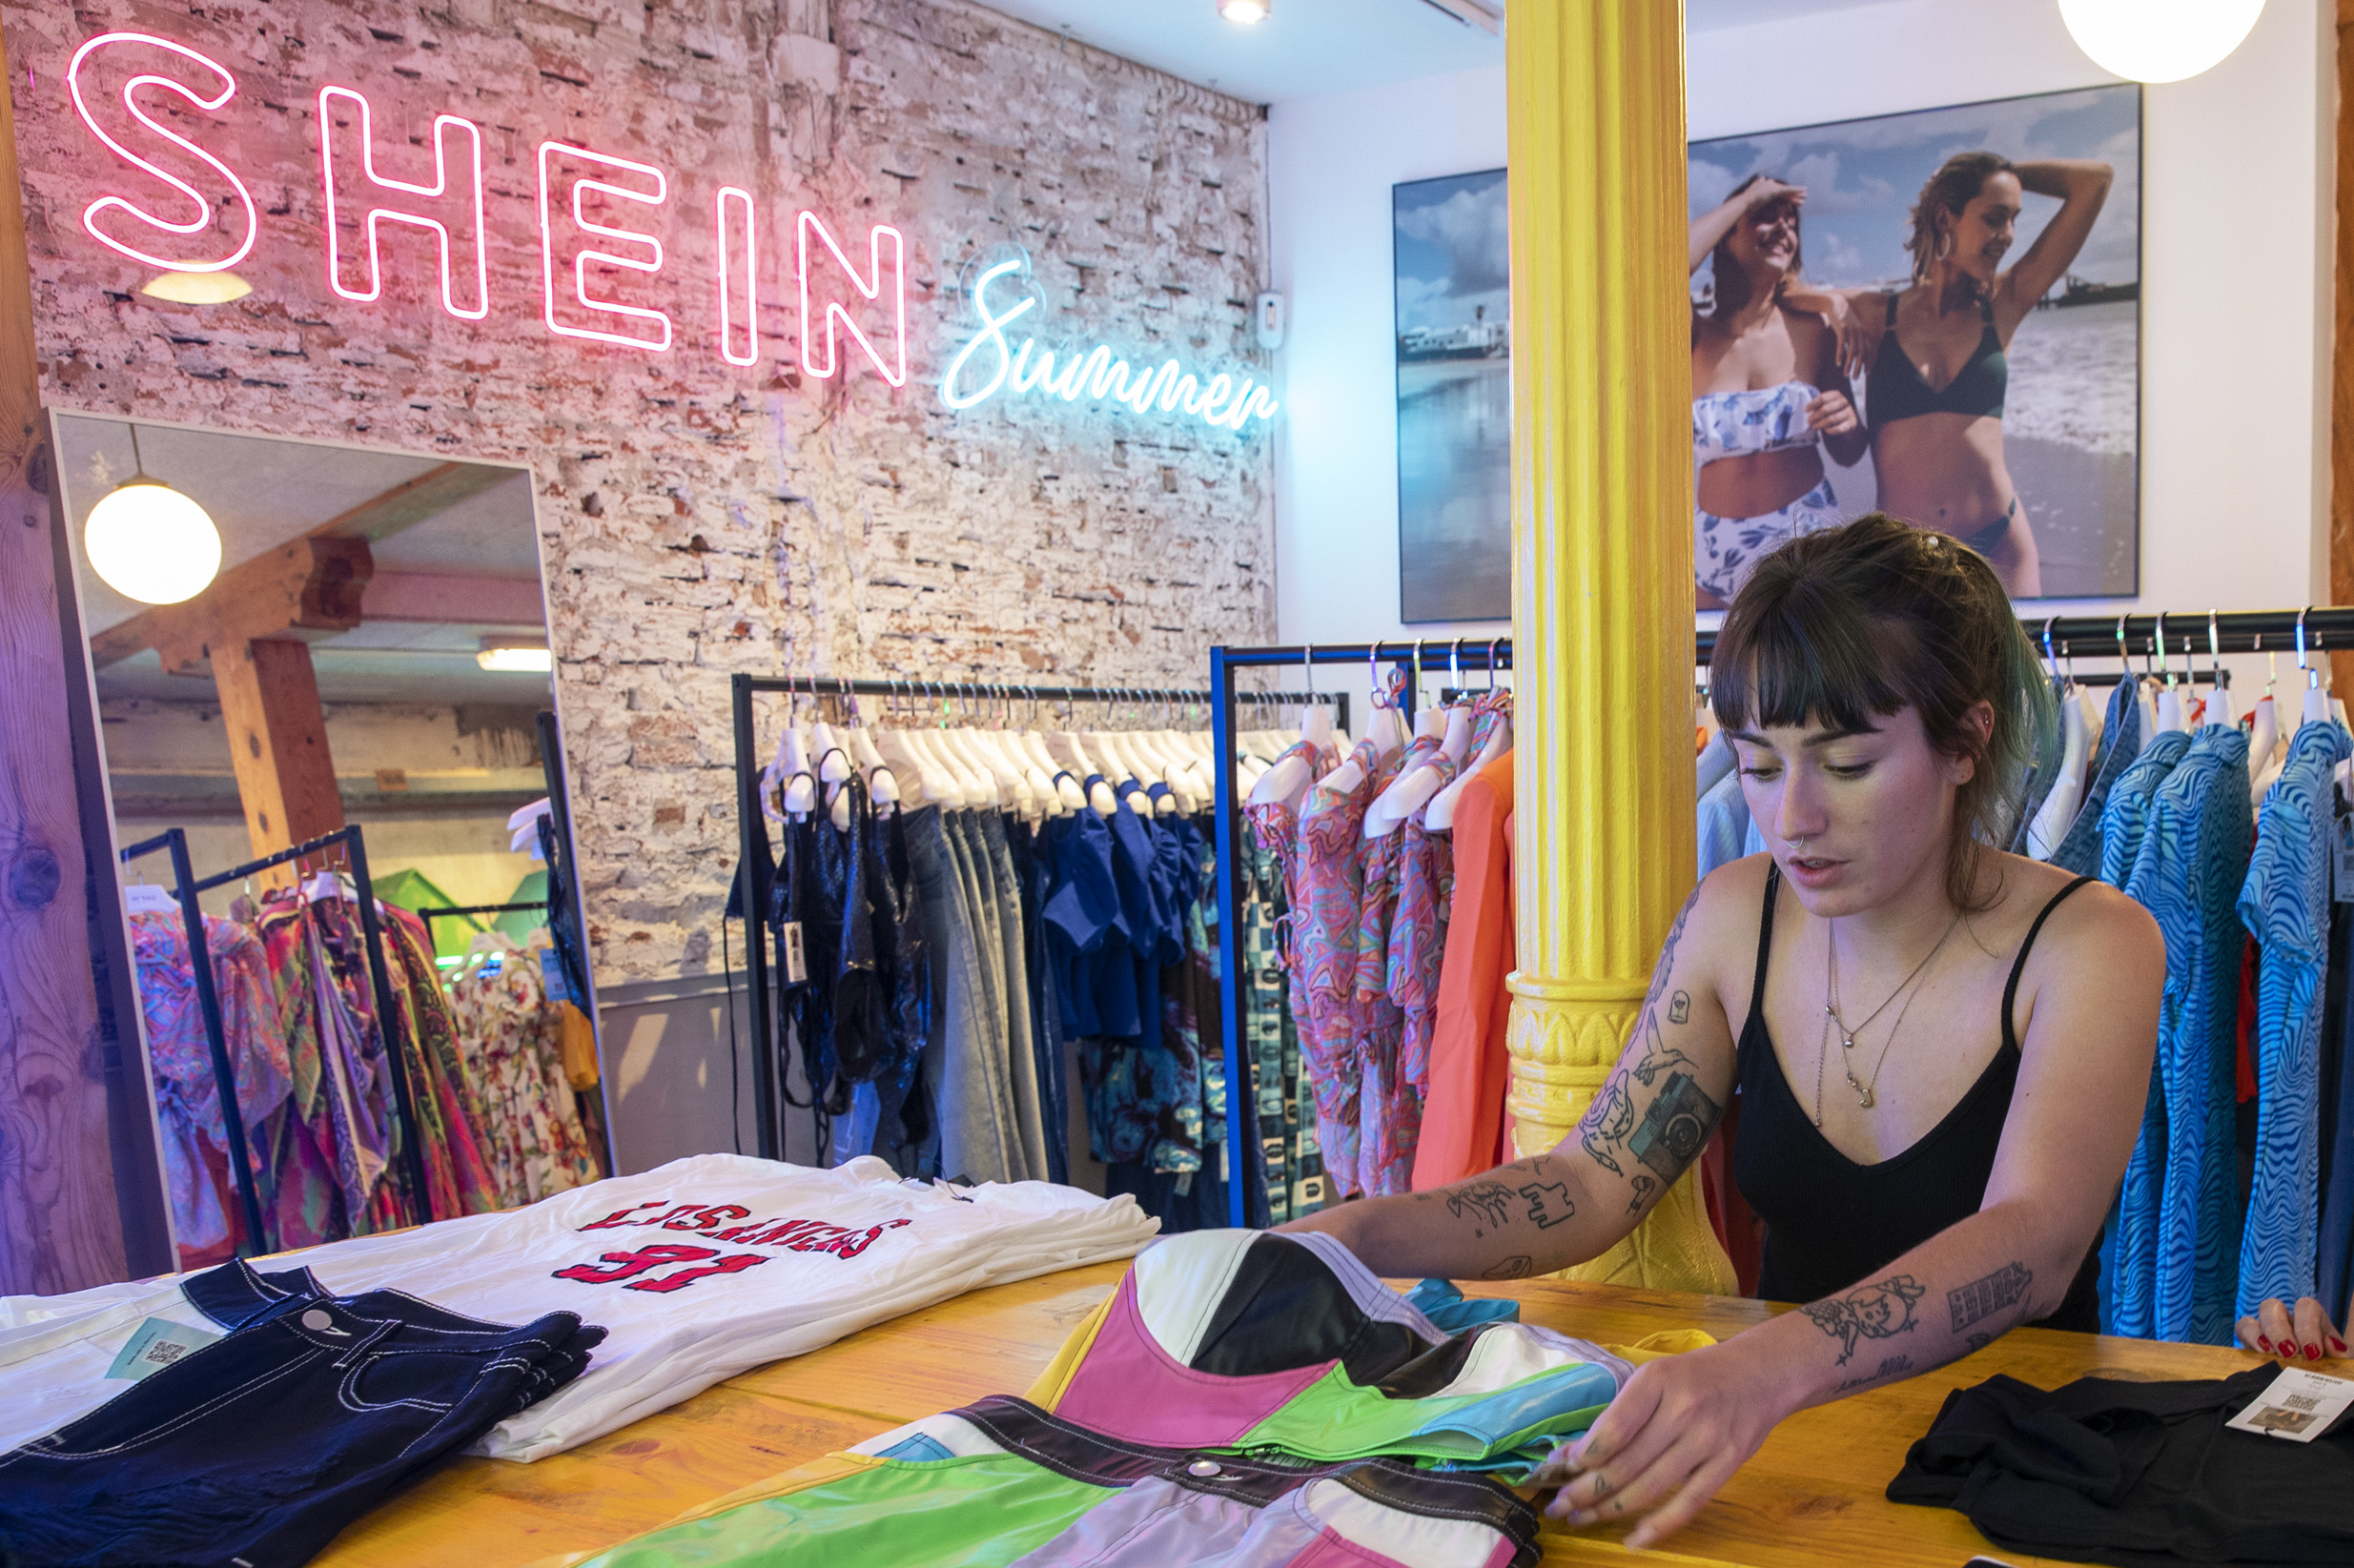 Así fue la apertura de la tienda Shein Madrid: las colas entrar, en imágenes | Fotos | Economía | EL PAÍS